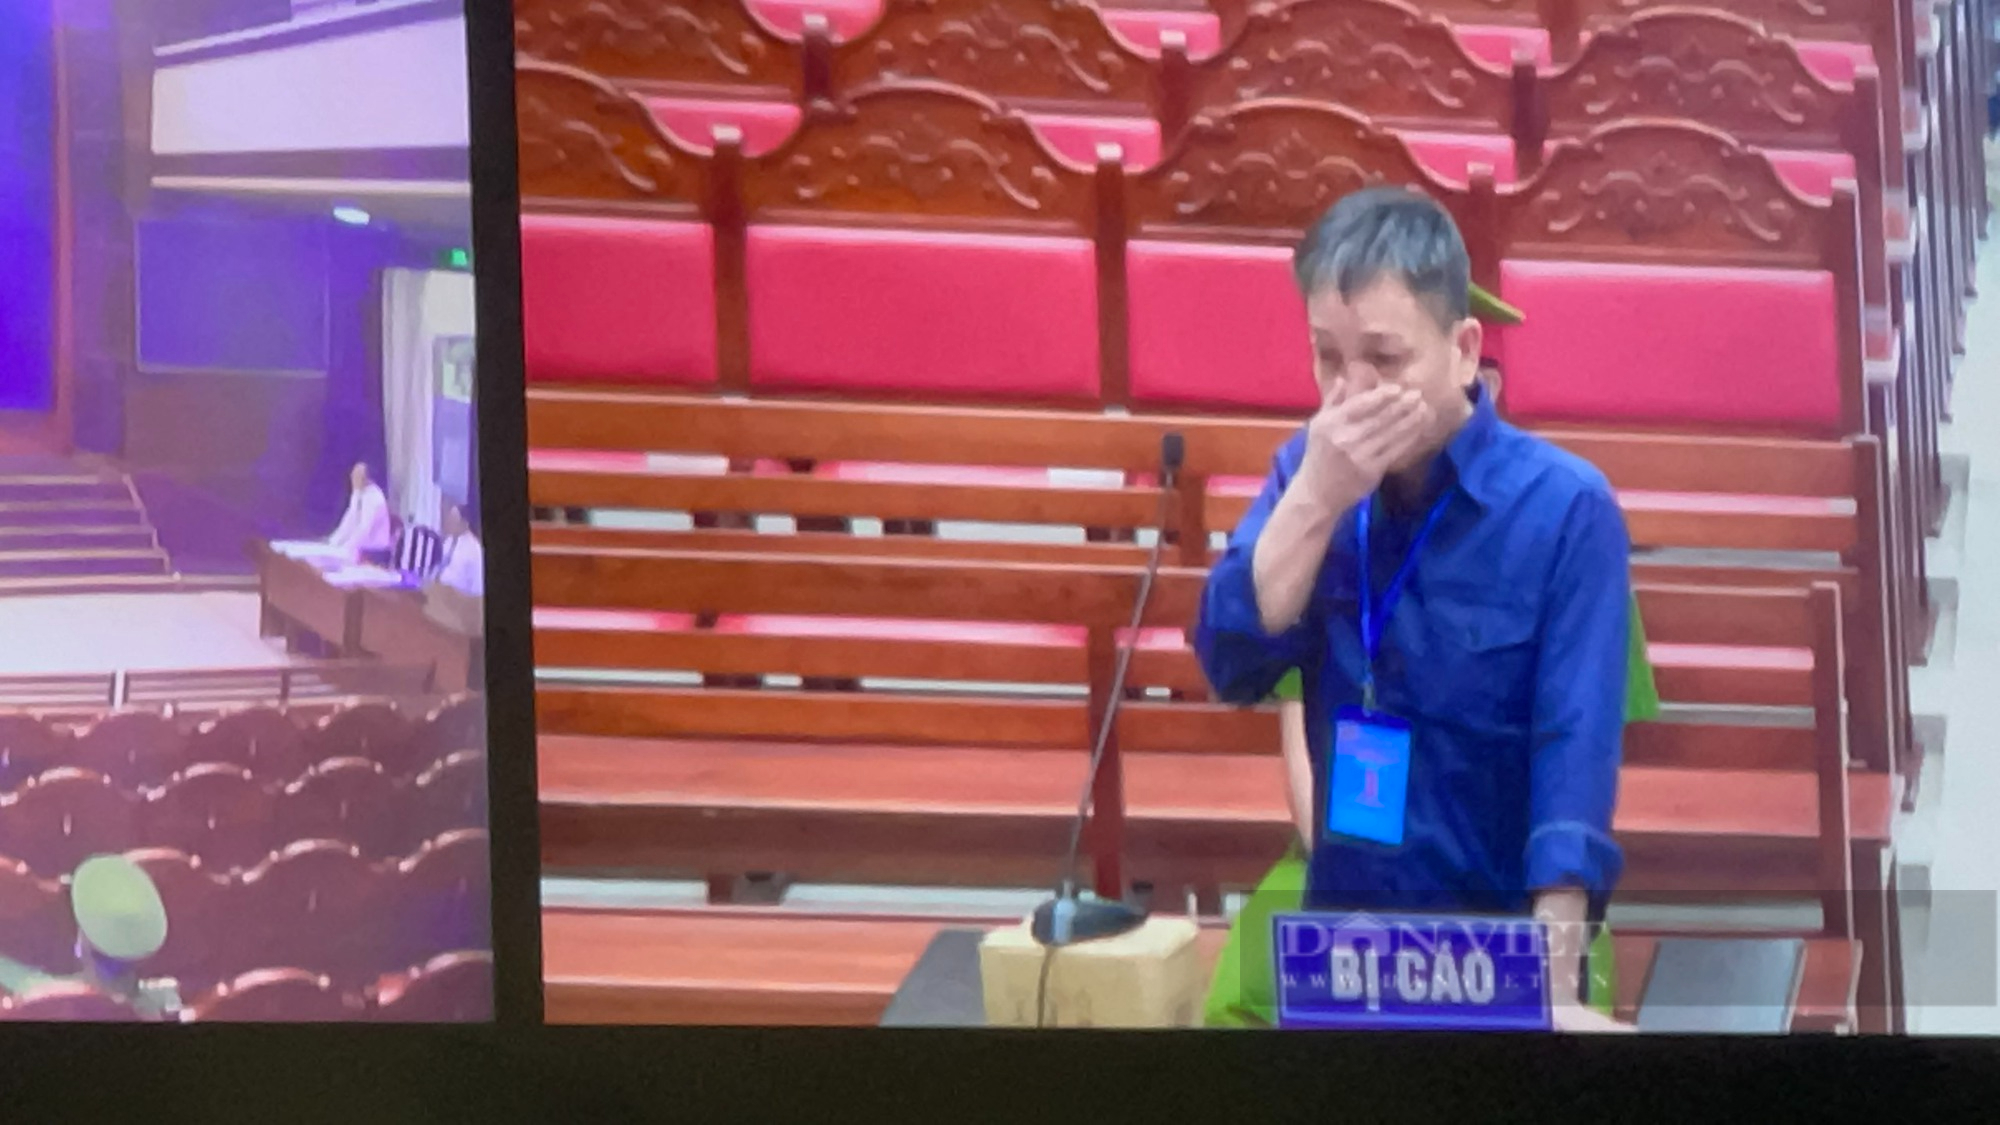 Đại án xăng lậu: Nguyễn Minh Khoa có nghi ngờ vận chuyển xăng lậu nhưng “im lặng” vì không chắc chắn - Ảnh 3.